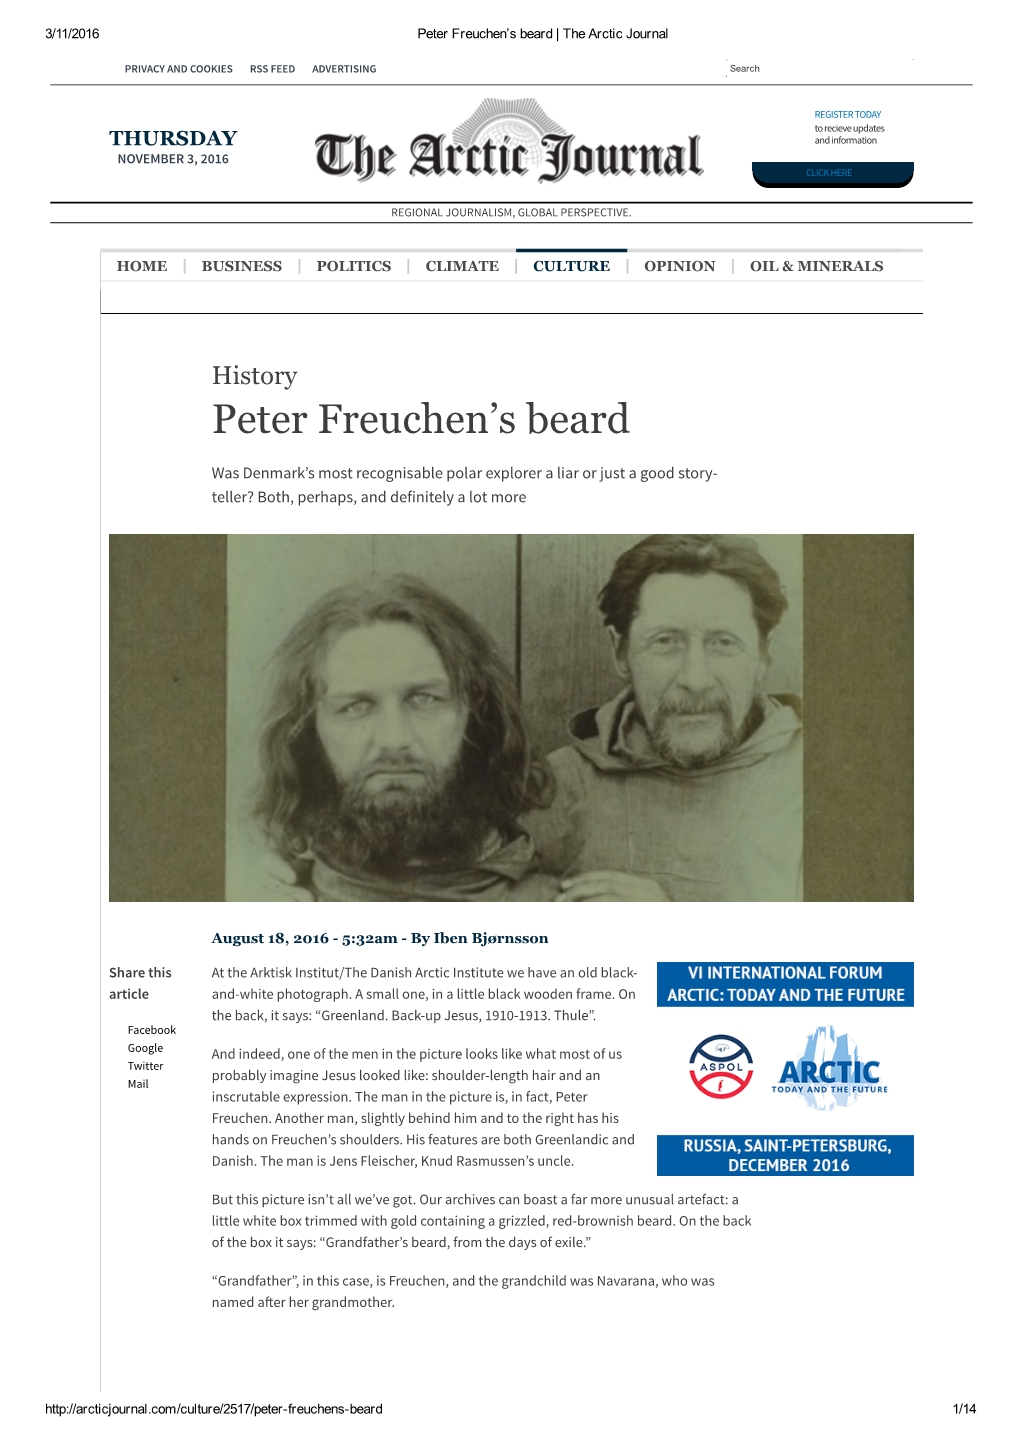 Peter Freuchen's Beard